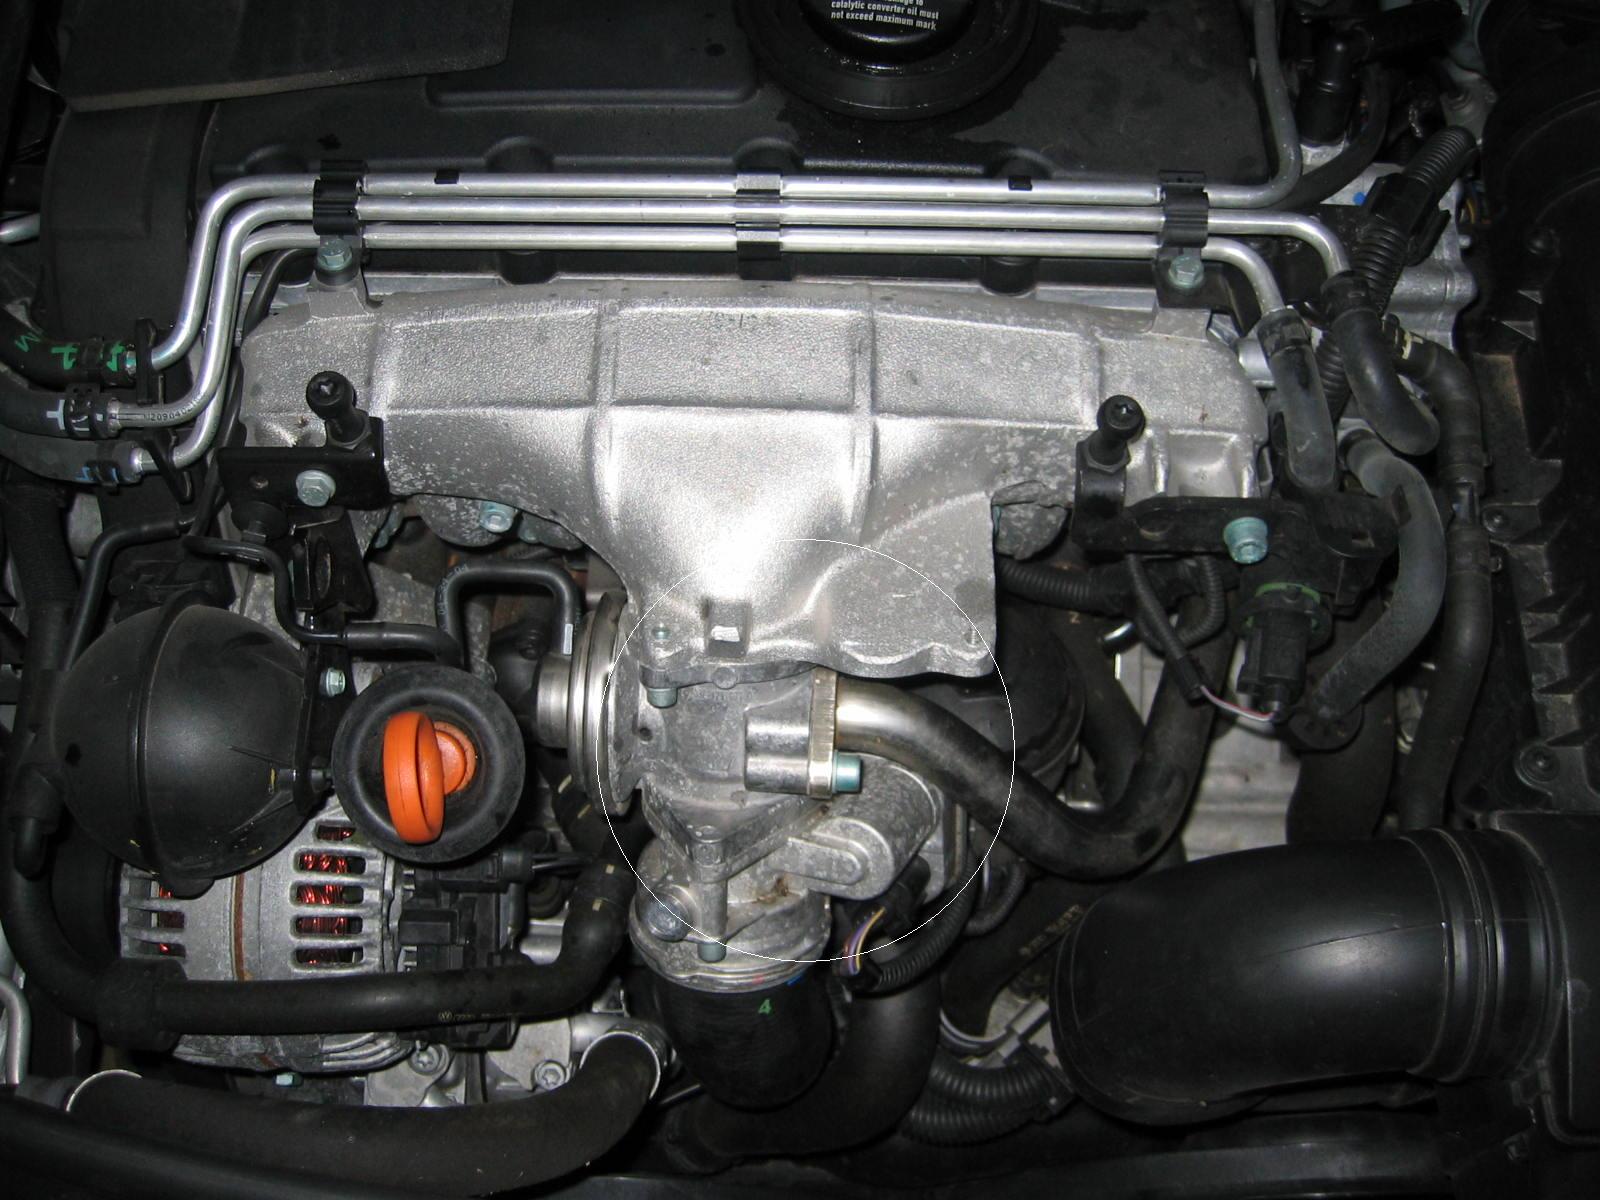 Motorraum Dämmung zerfressen - Audi A3 (8P) - A3-Freunde